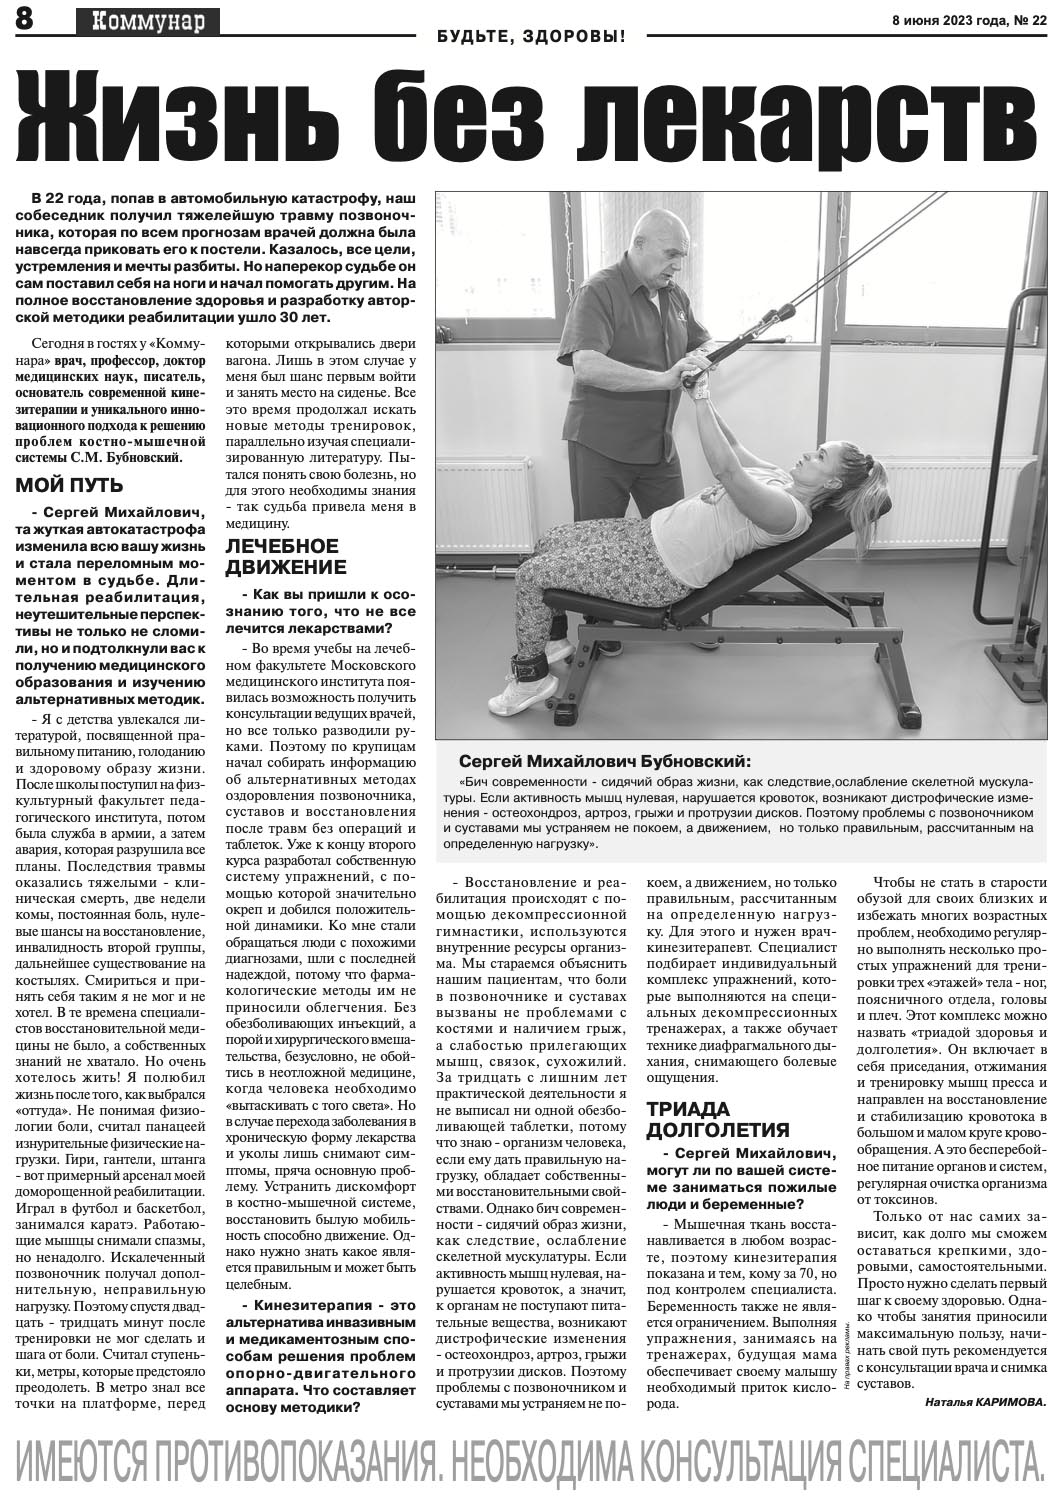 Публикация в газете "Коммунар" от 8 июня 2023 года.jpg